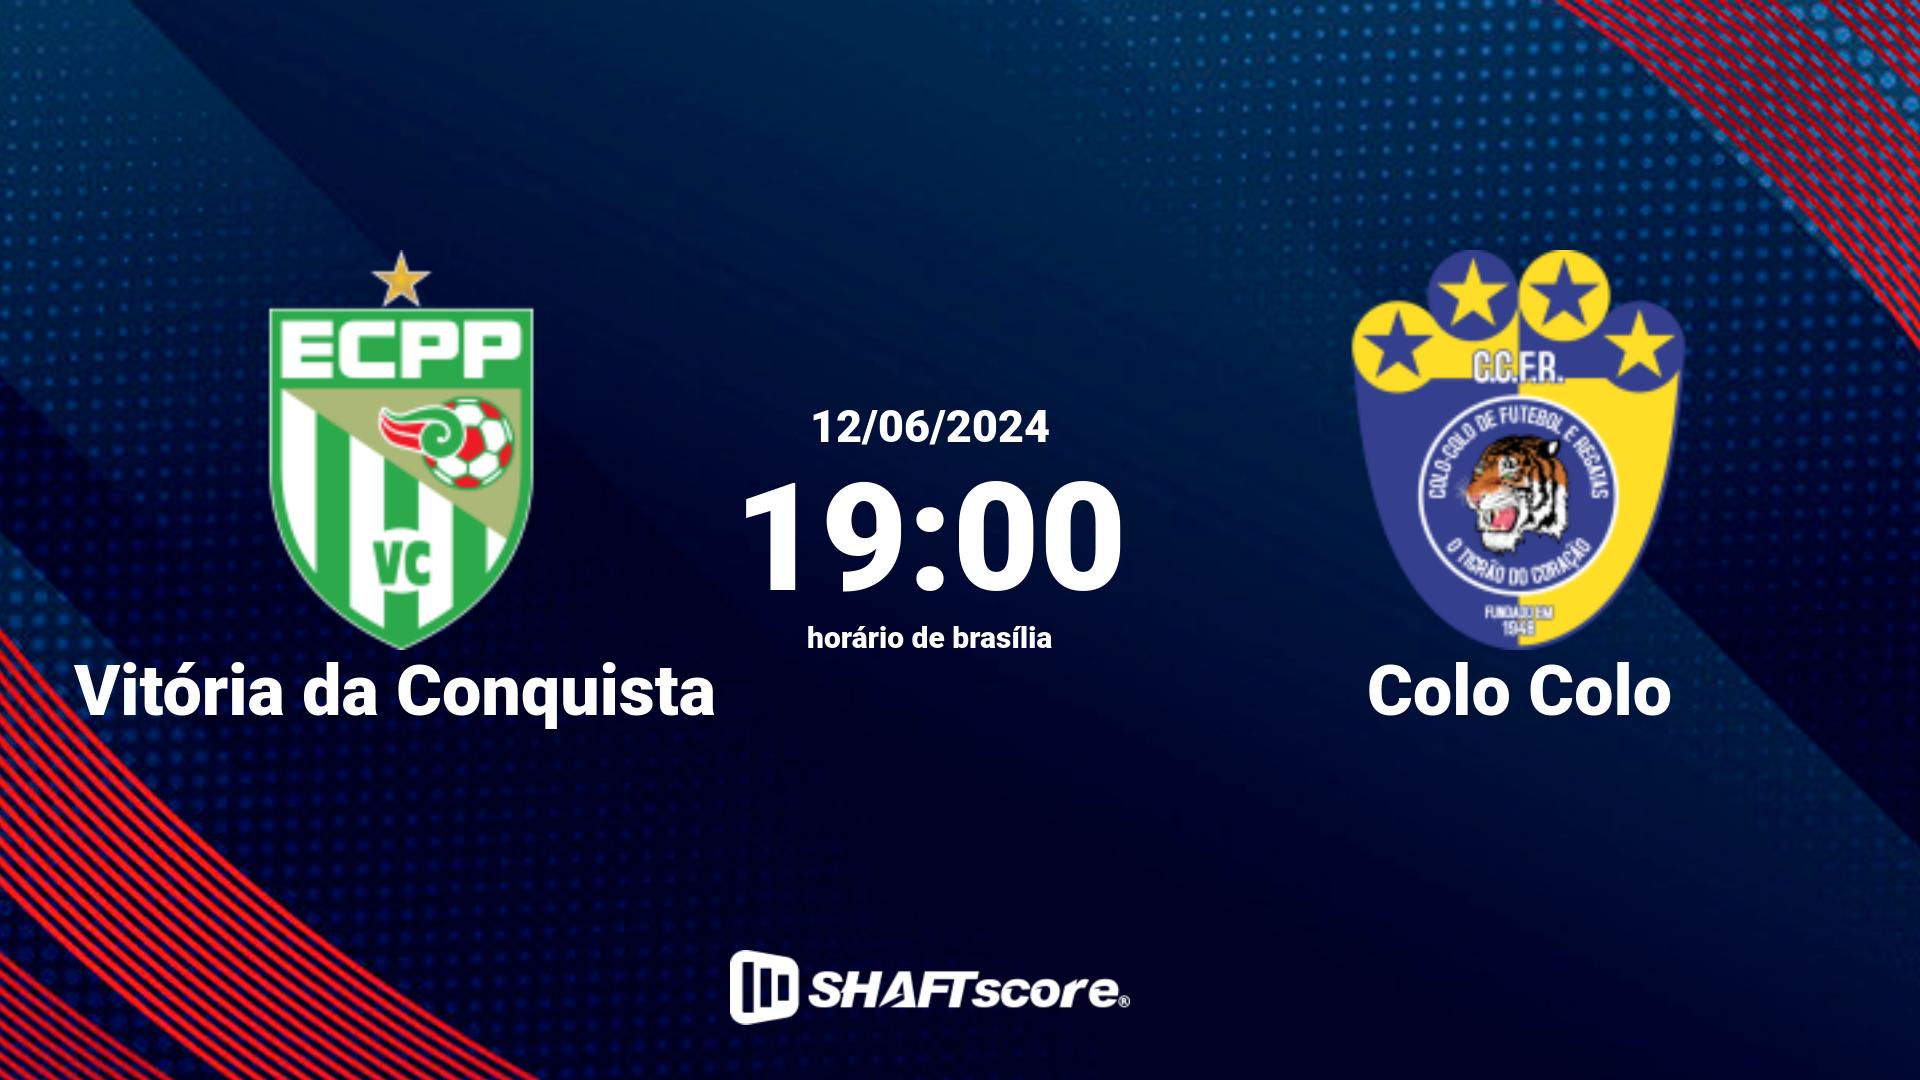 Estatísticas do jogo Vitória da Conquista vs Colo Colo 12.06 19:00